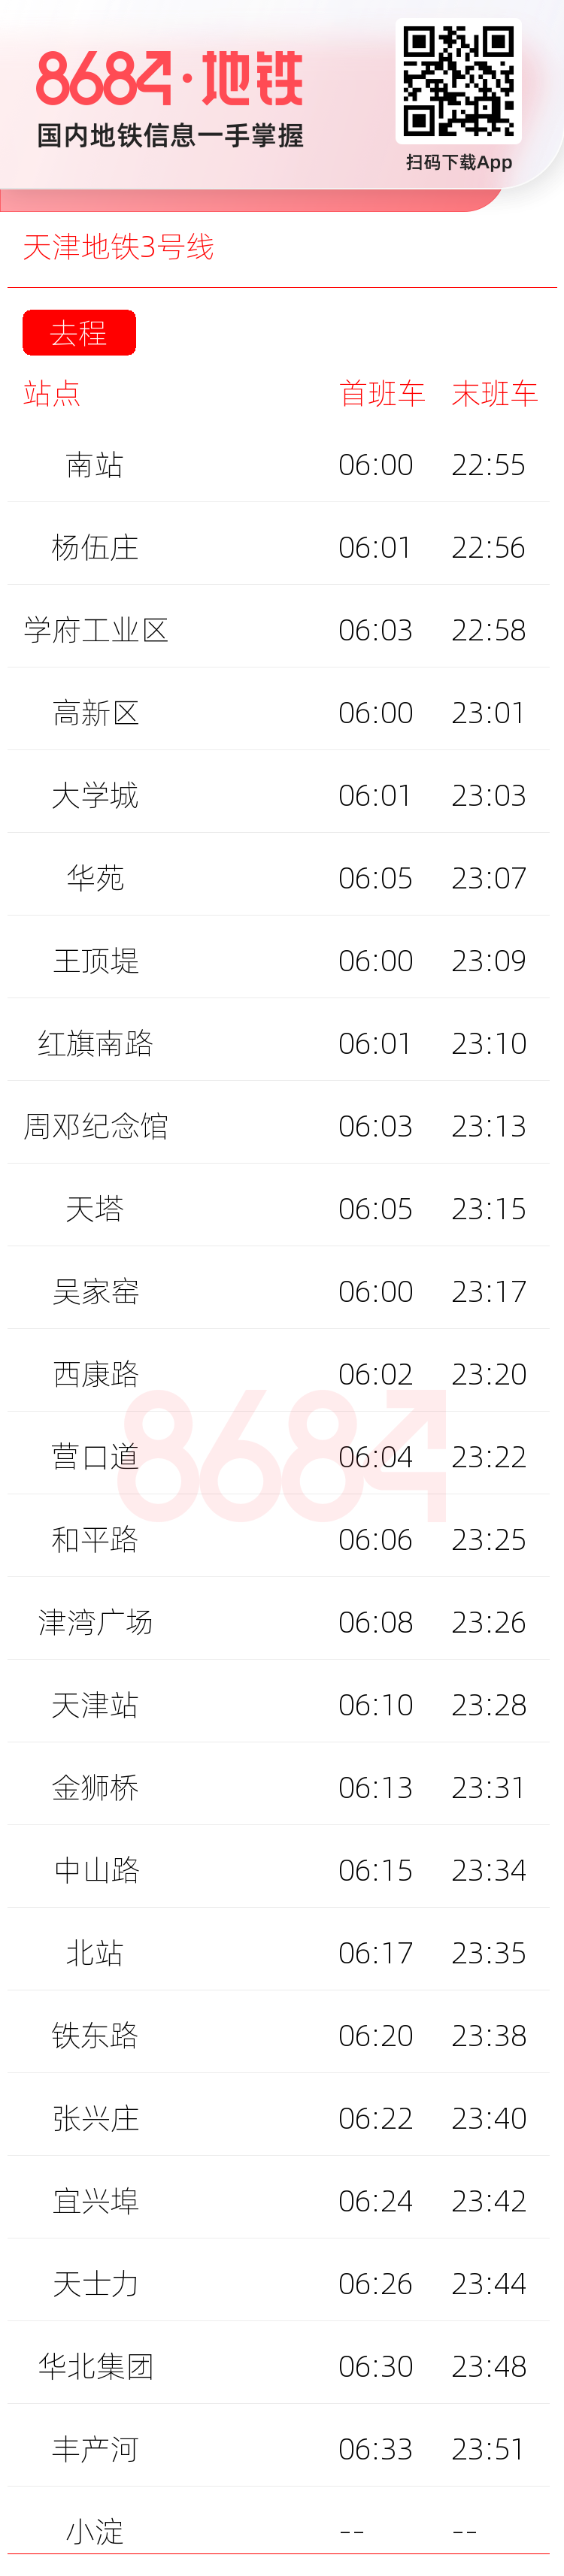 天津地铁3号线运营时间表